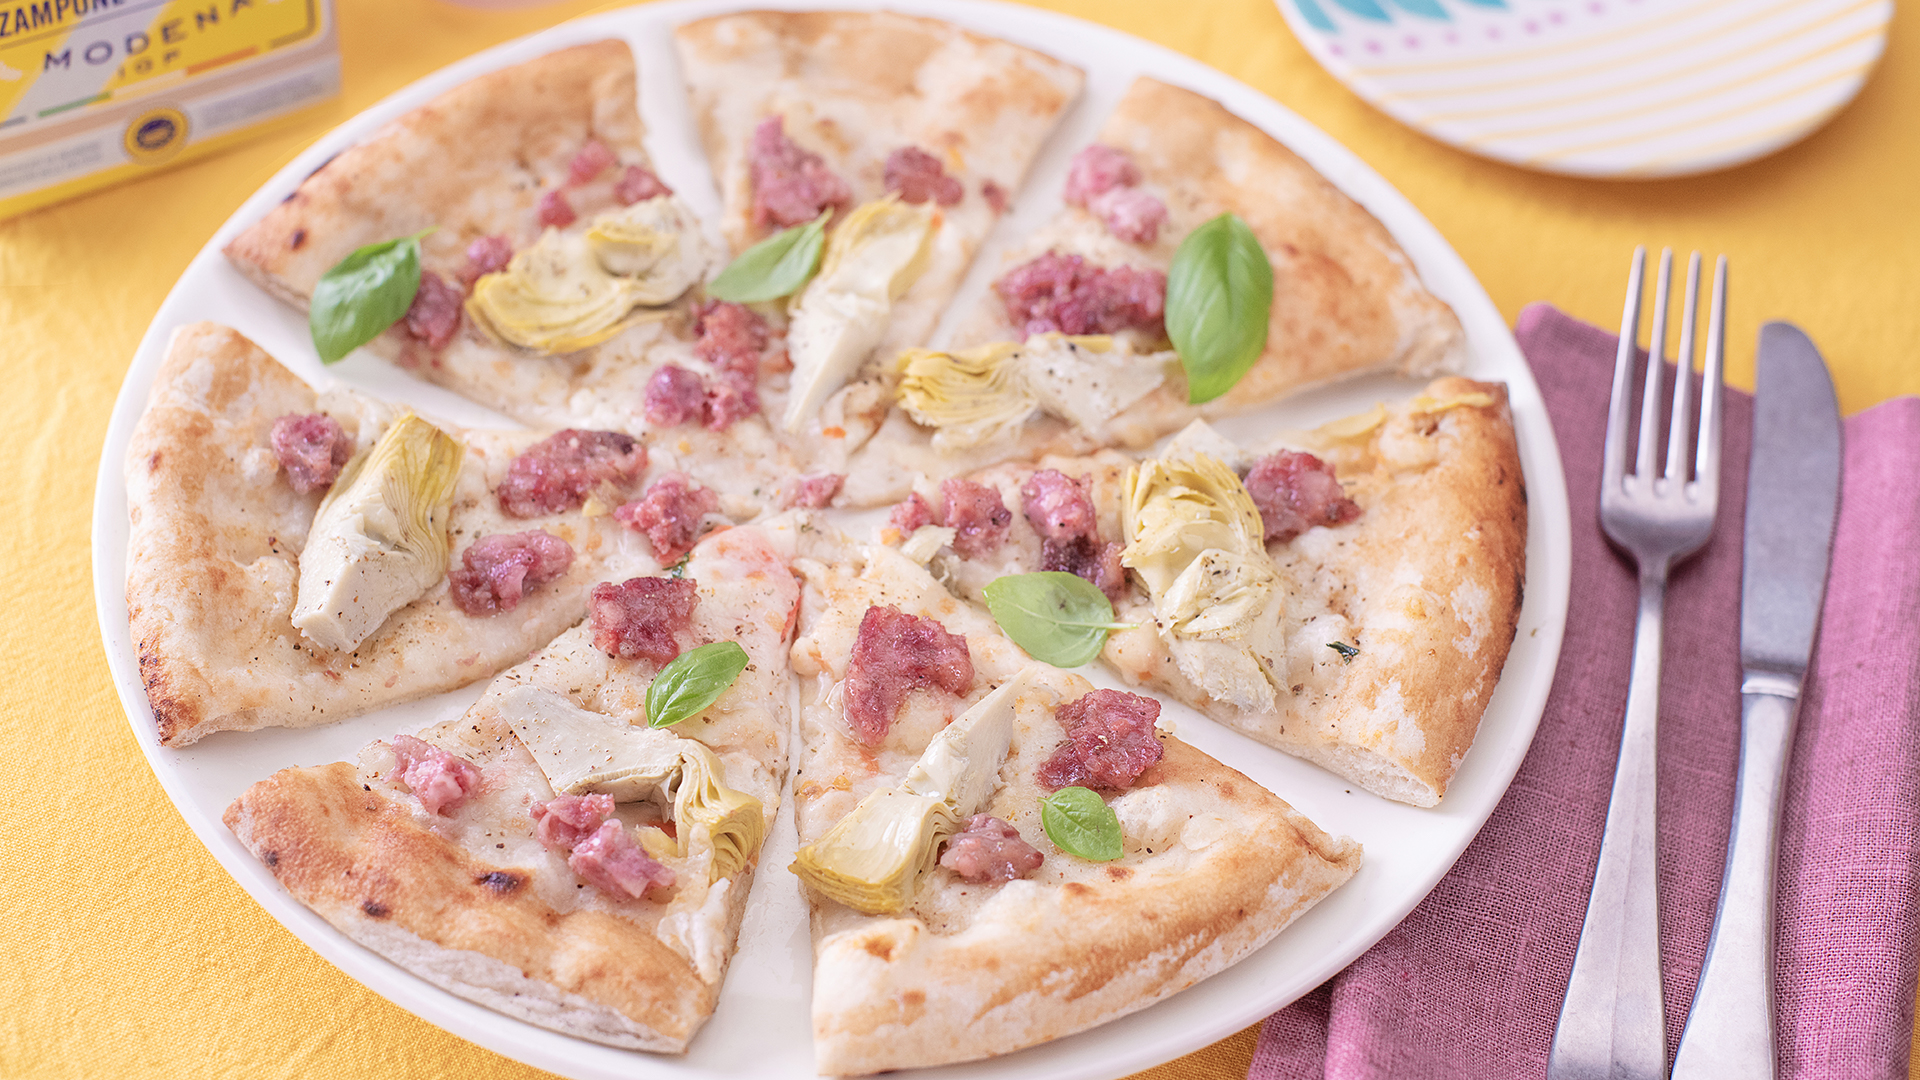 Ricetta della pizza con Zampone Modena IGP e carciofi – Video ricetta